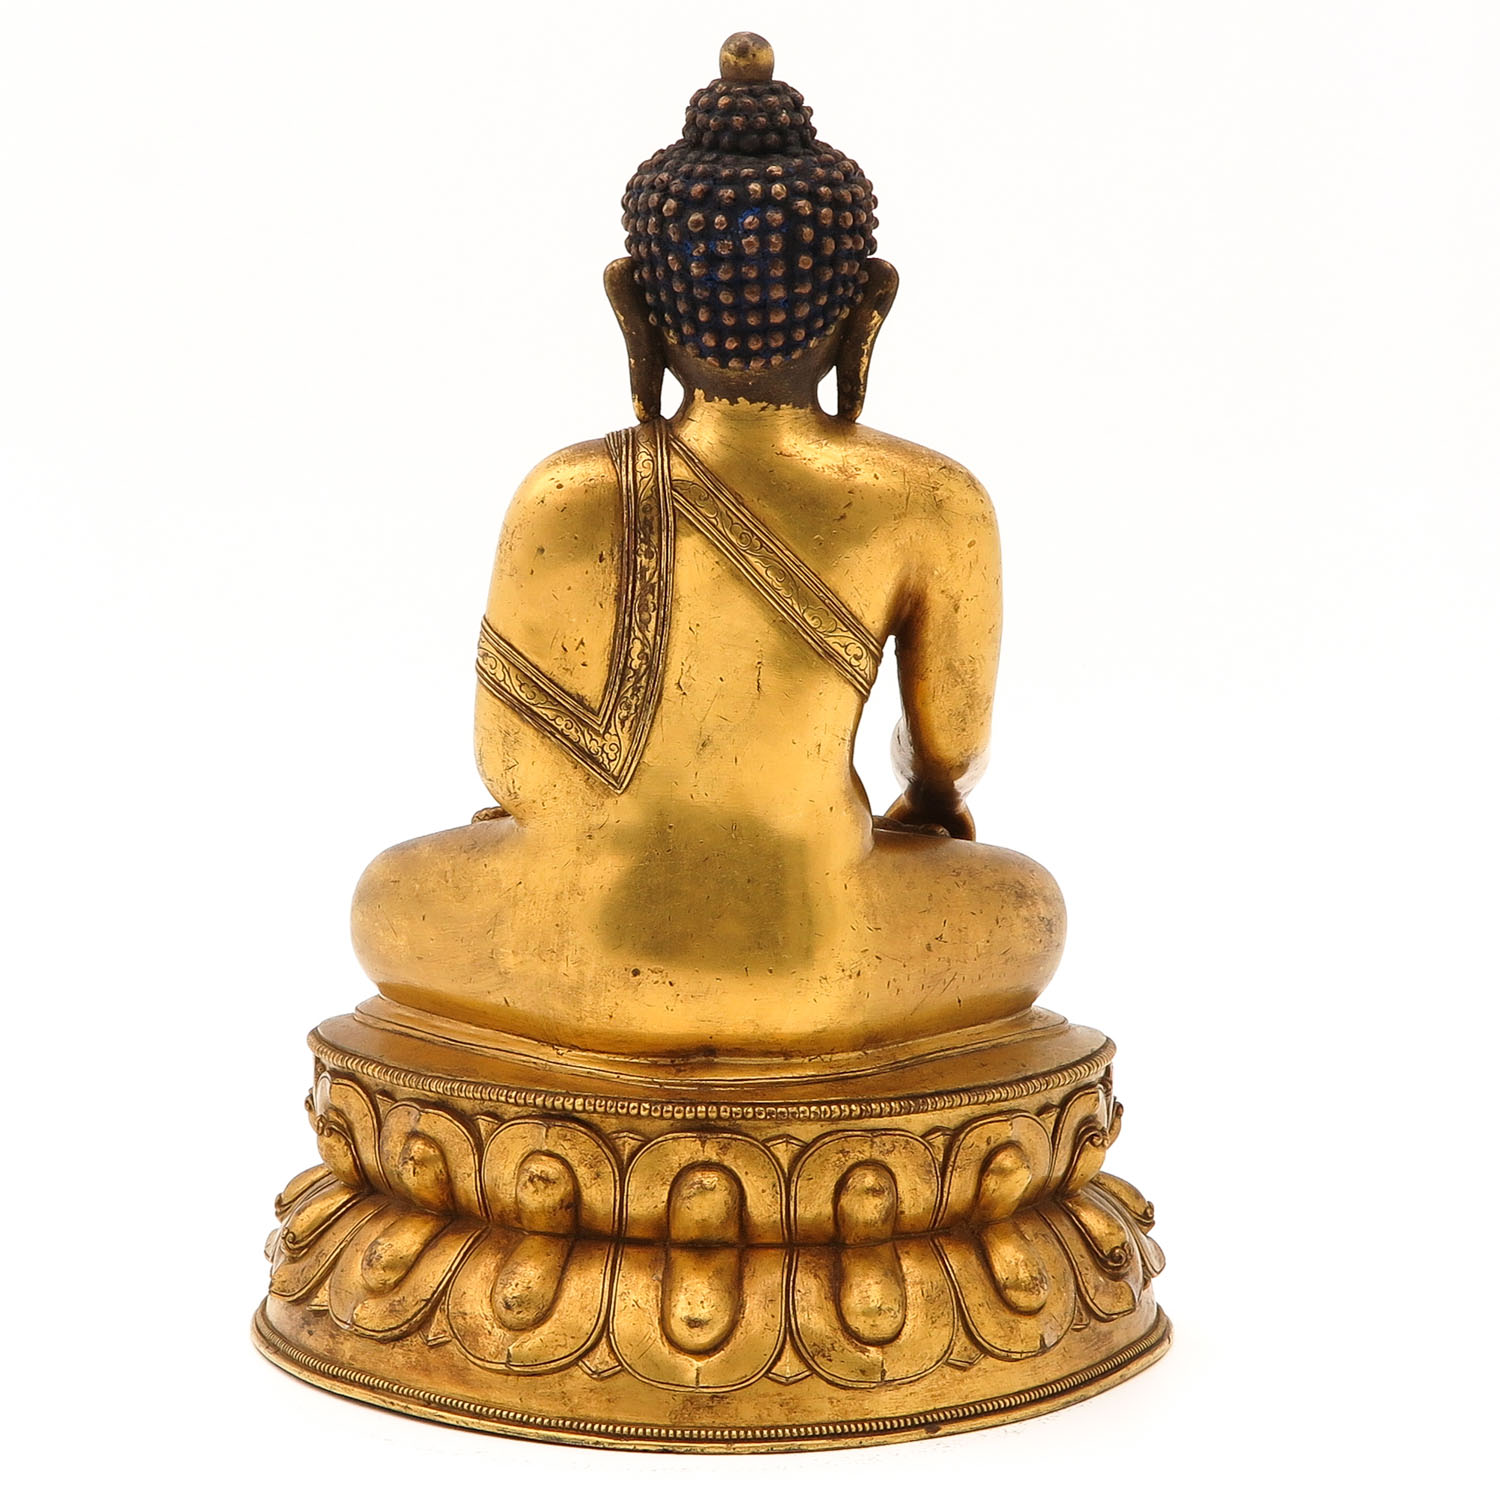 A Bronze Buddha Sculpture - Image 3 of 10